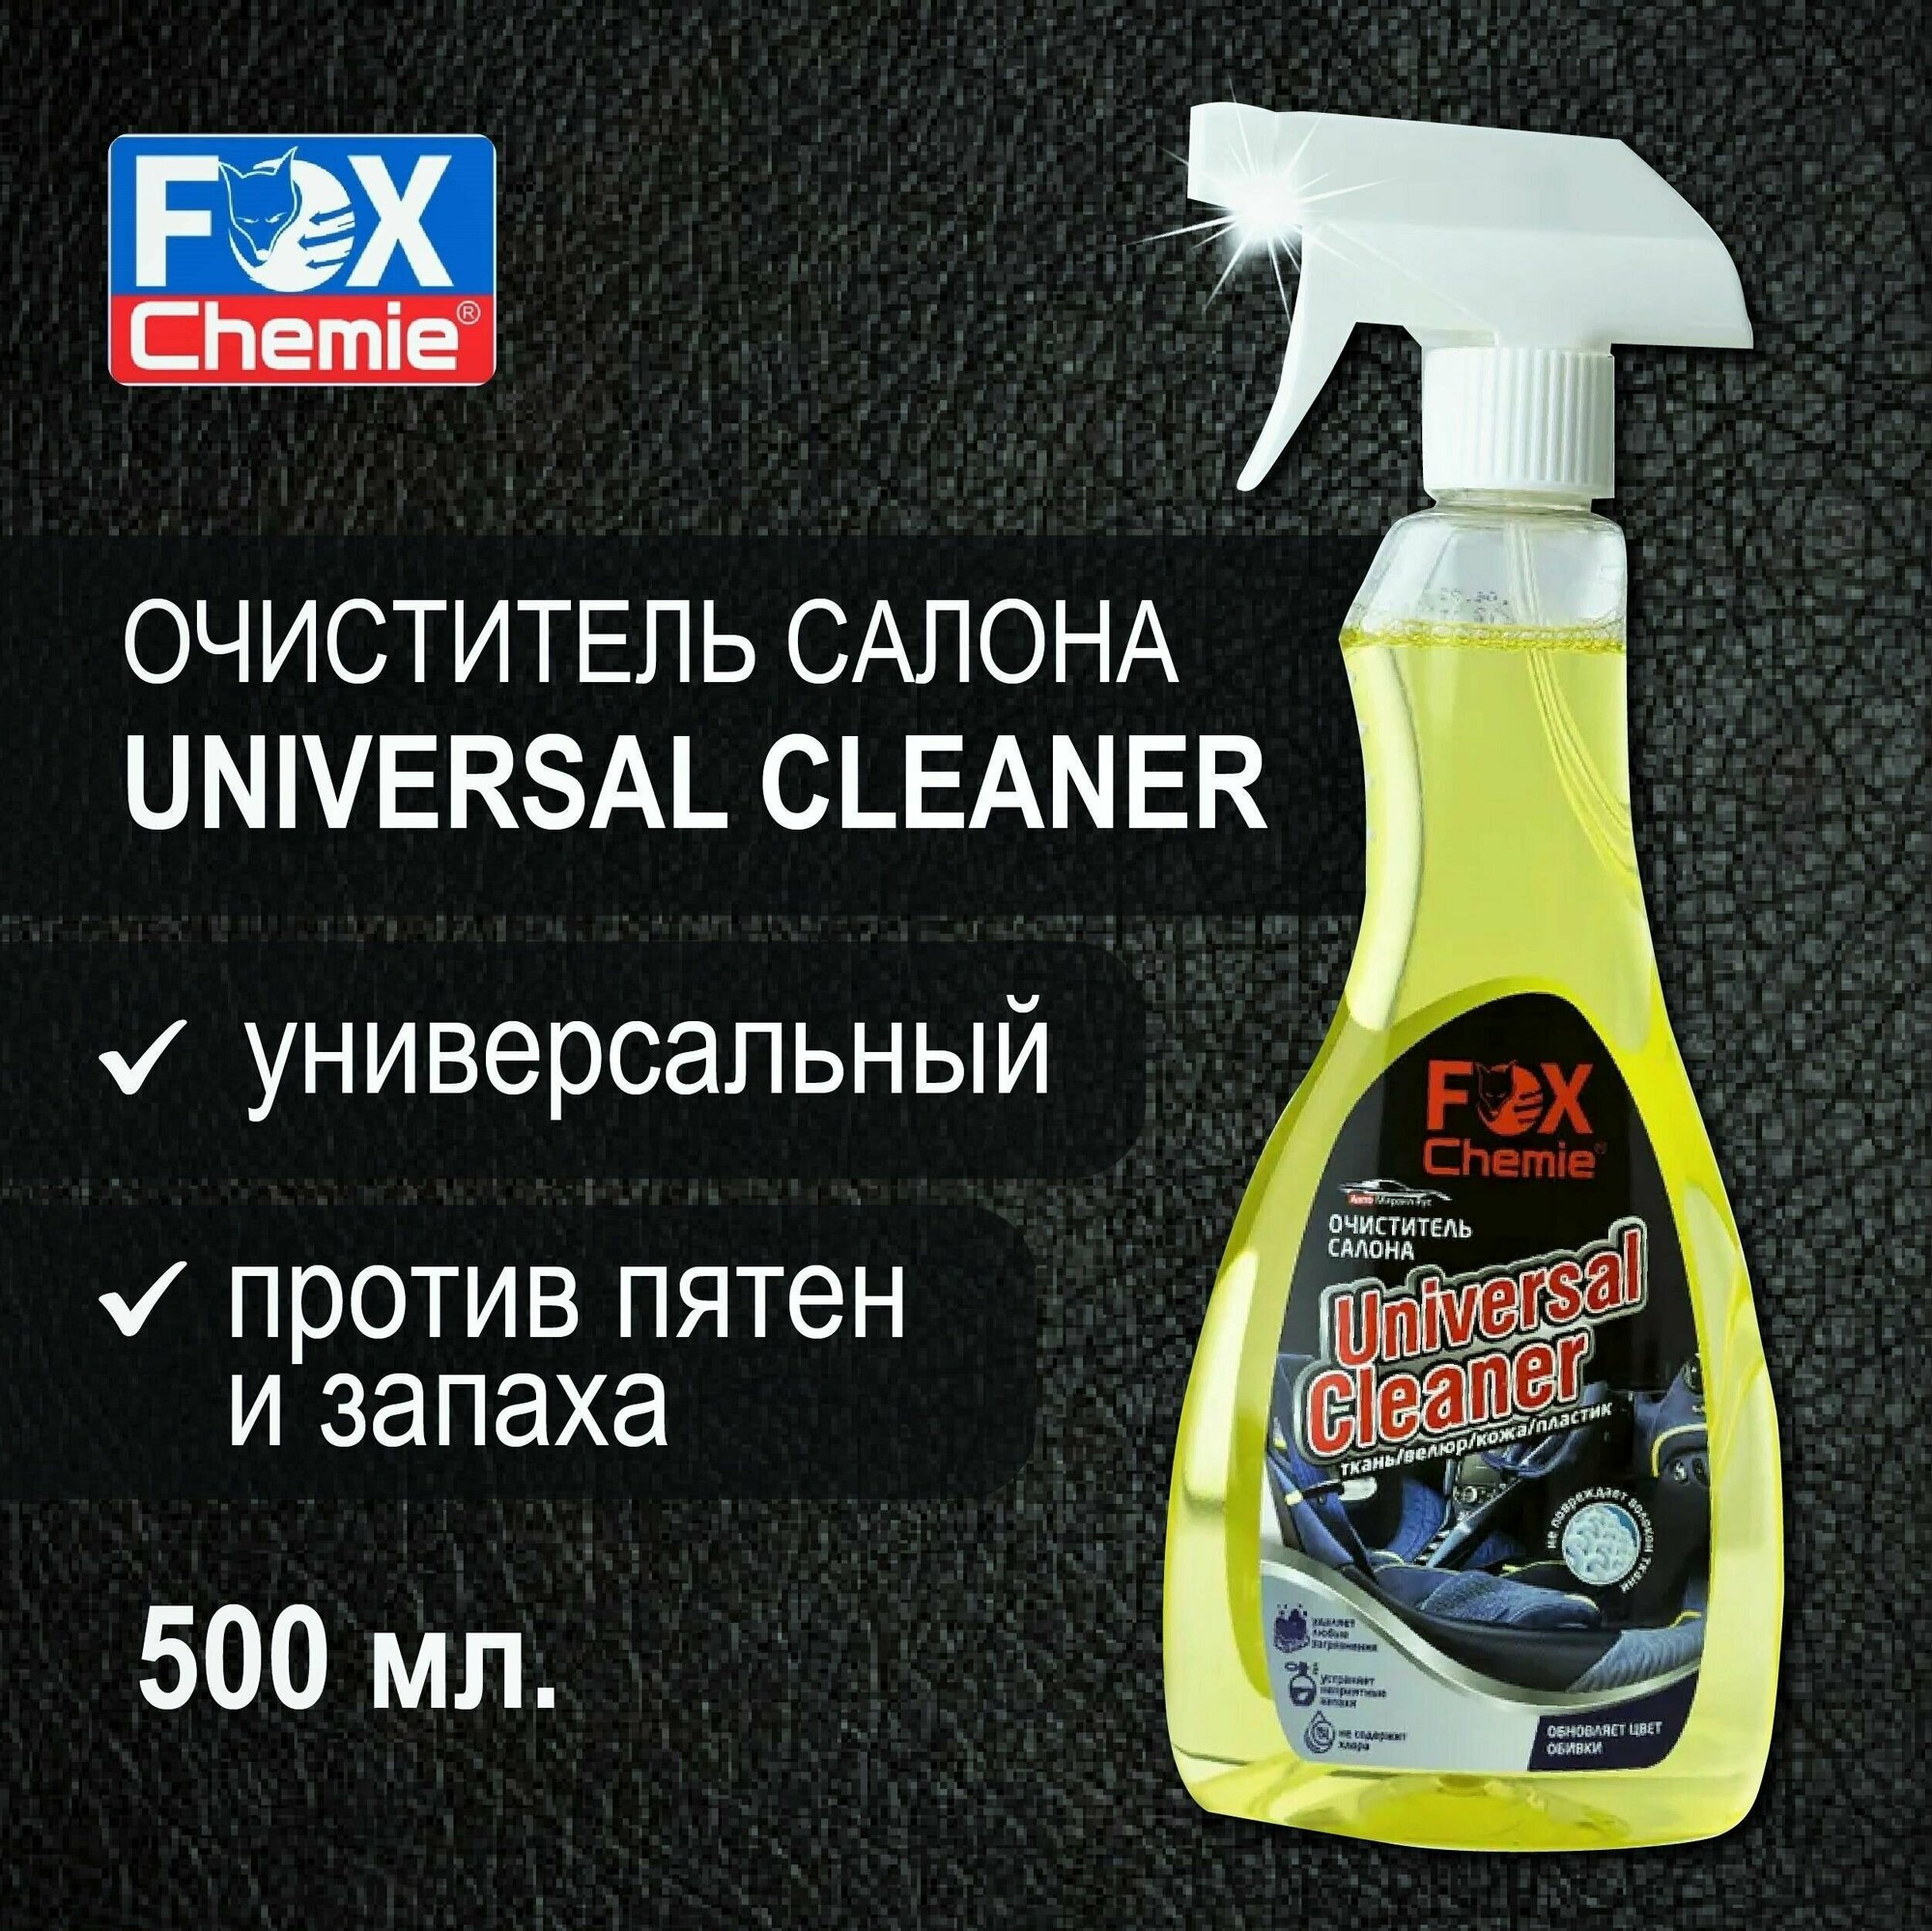 FOX CHEMIE/ Очиститель салона Universal Cleaner, пятновыводитель, чистка для салона автомобиля, 500 мл.